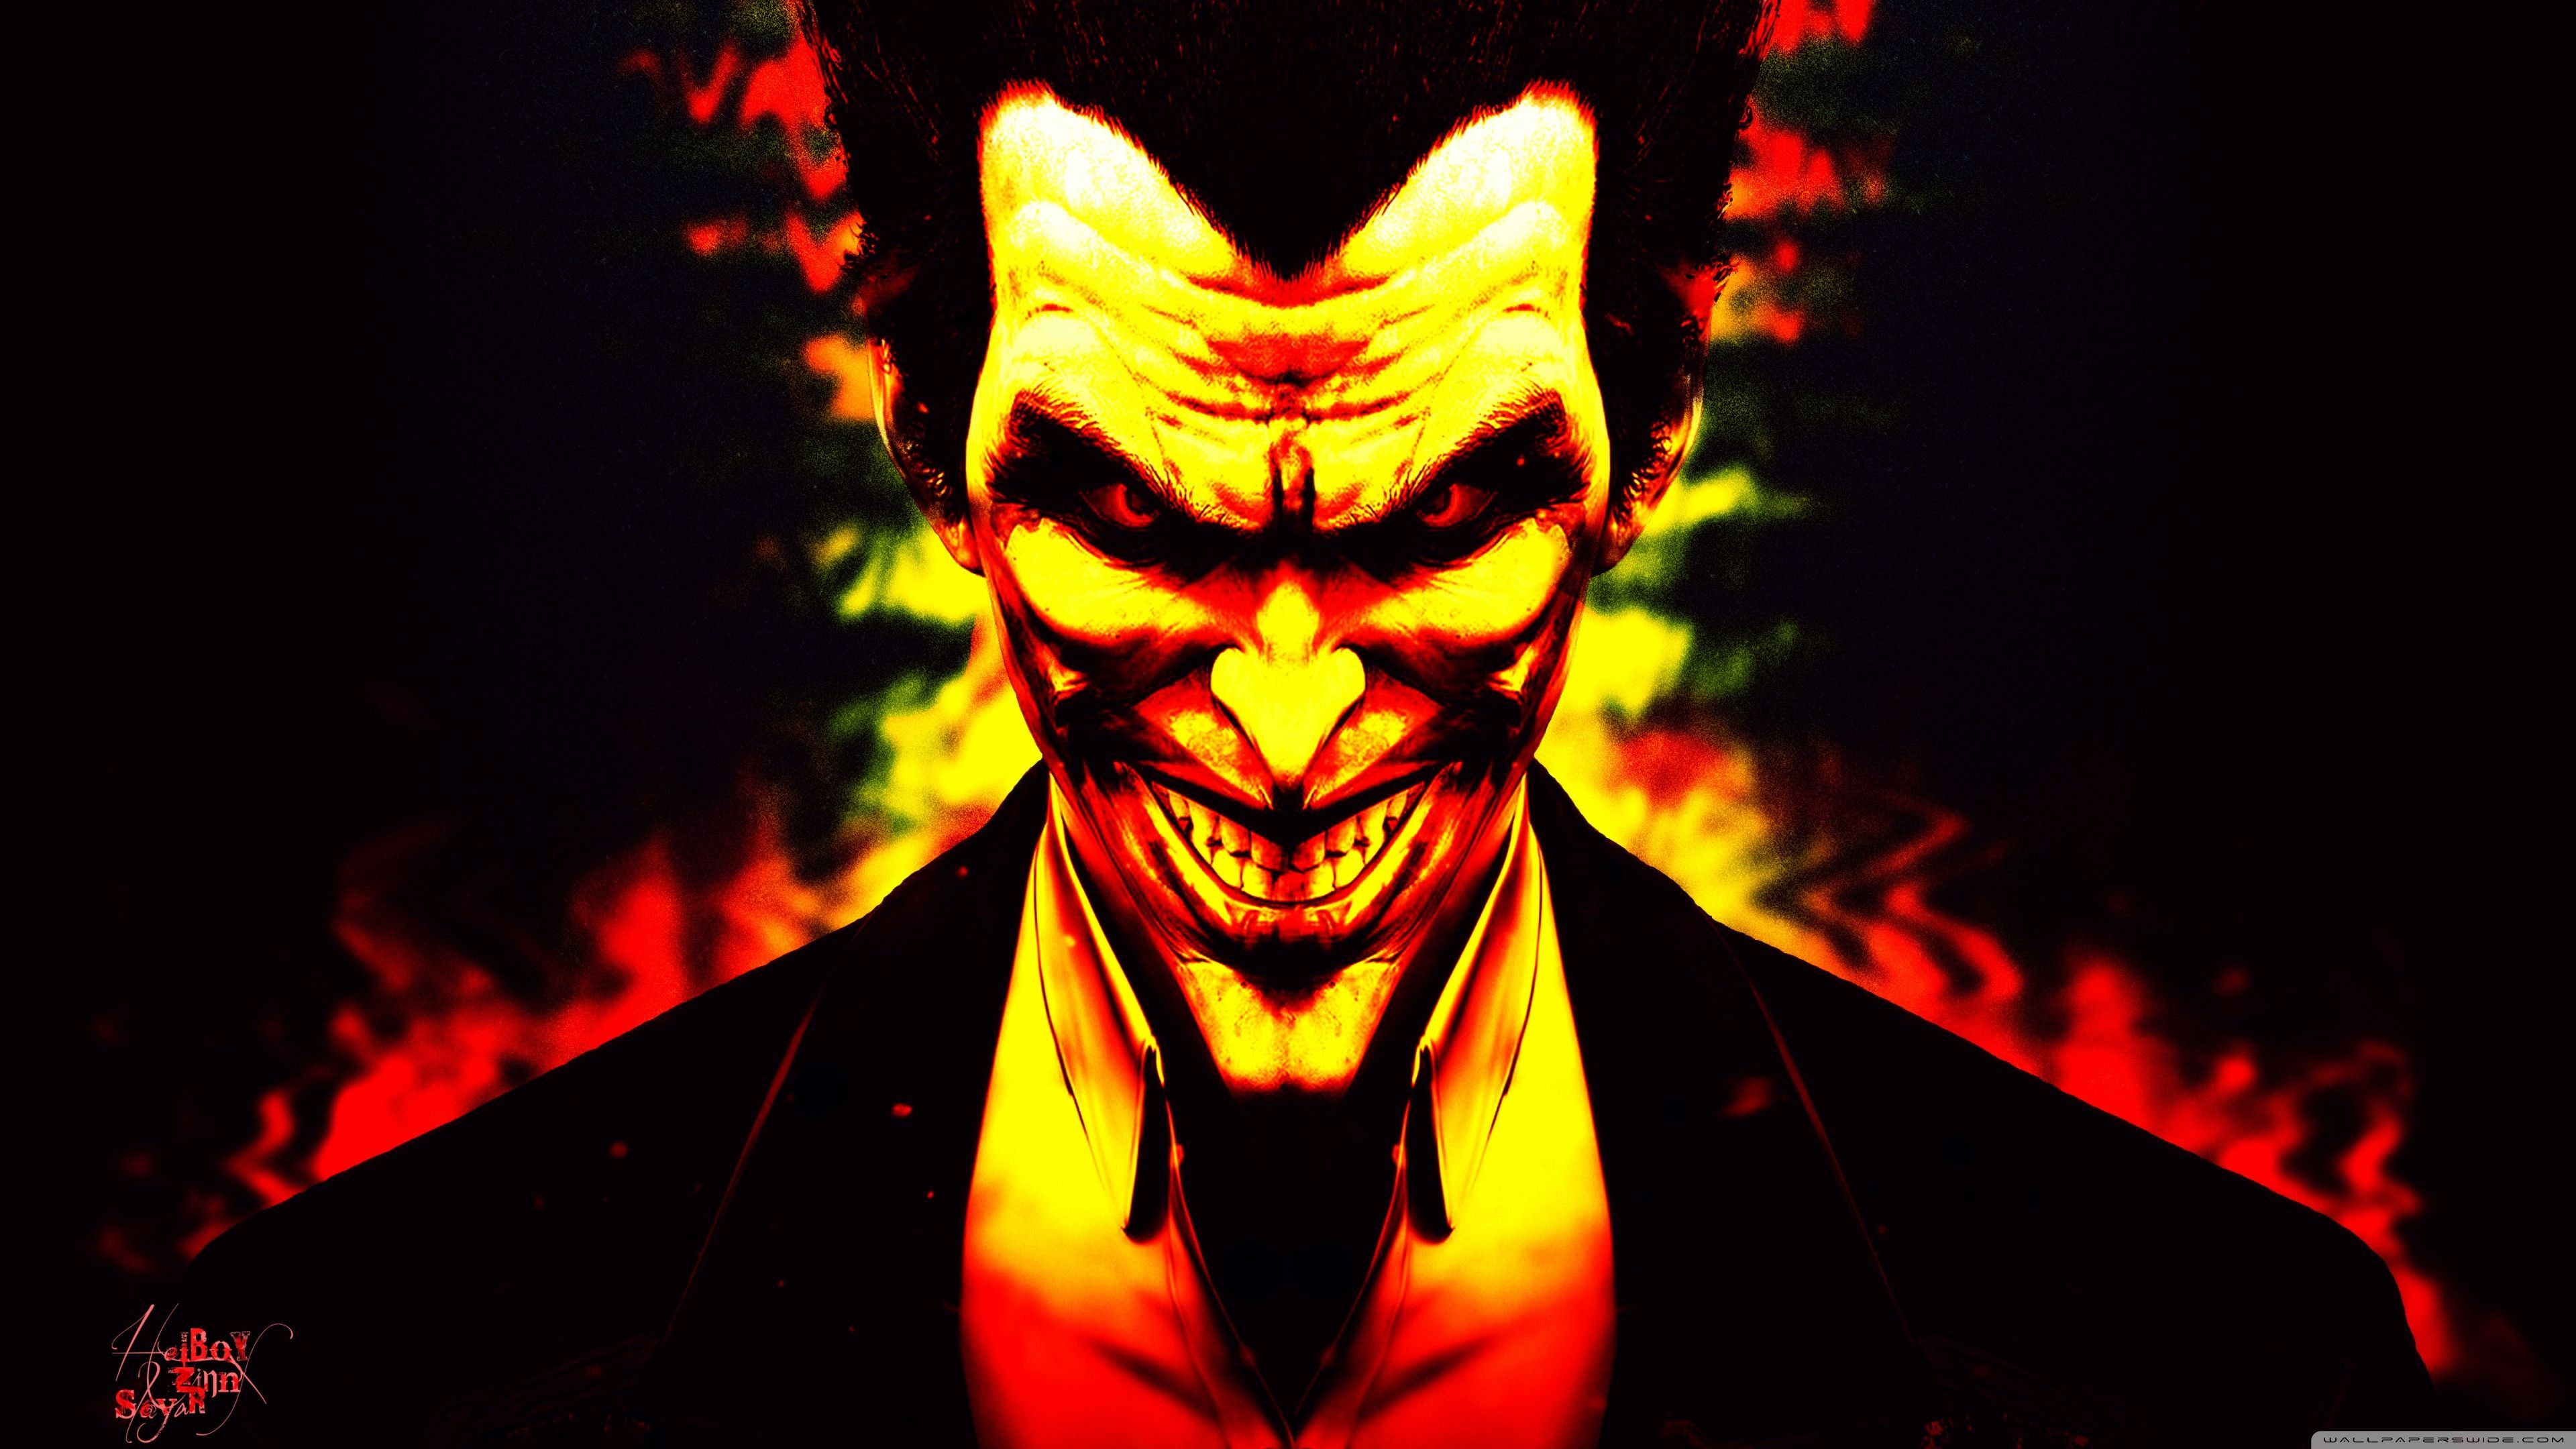 Joker 4K Ultra HD Wallpaper Free Joker 4K Ultra HD Background